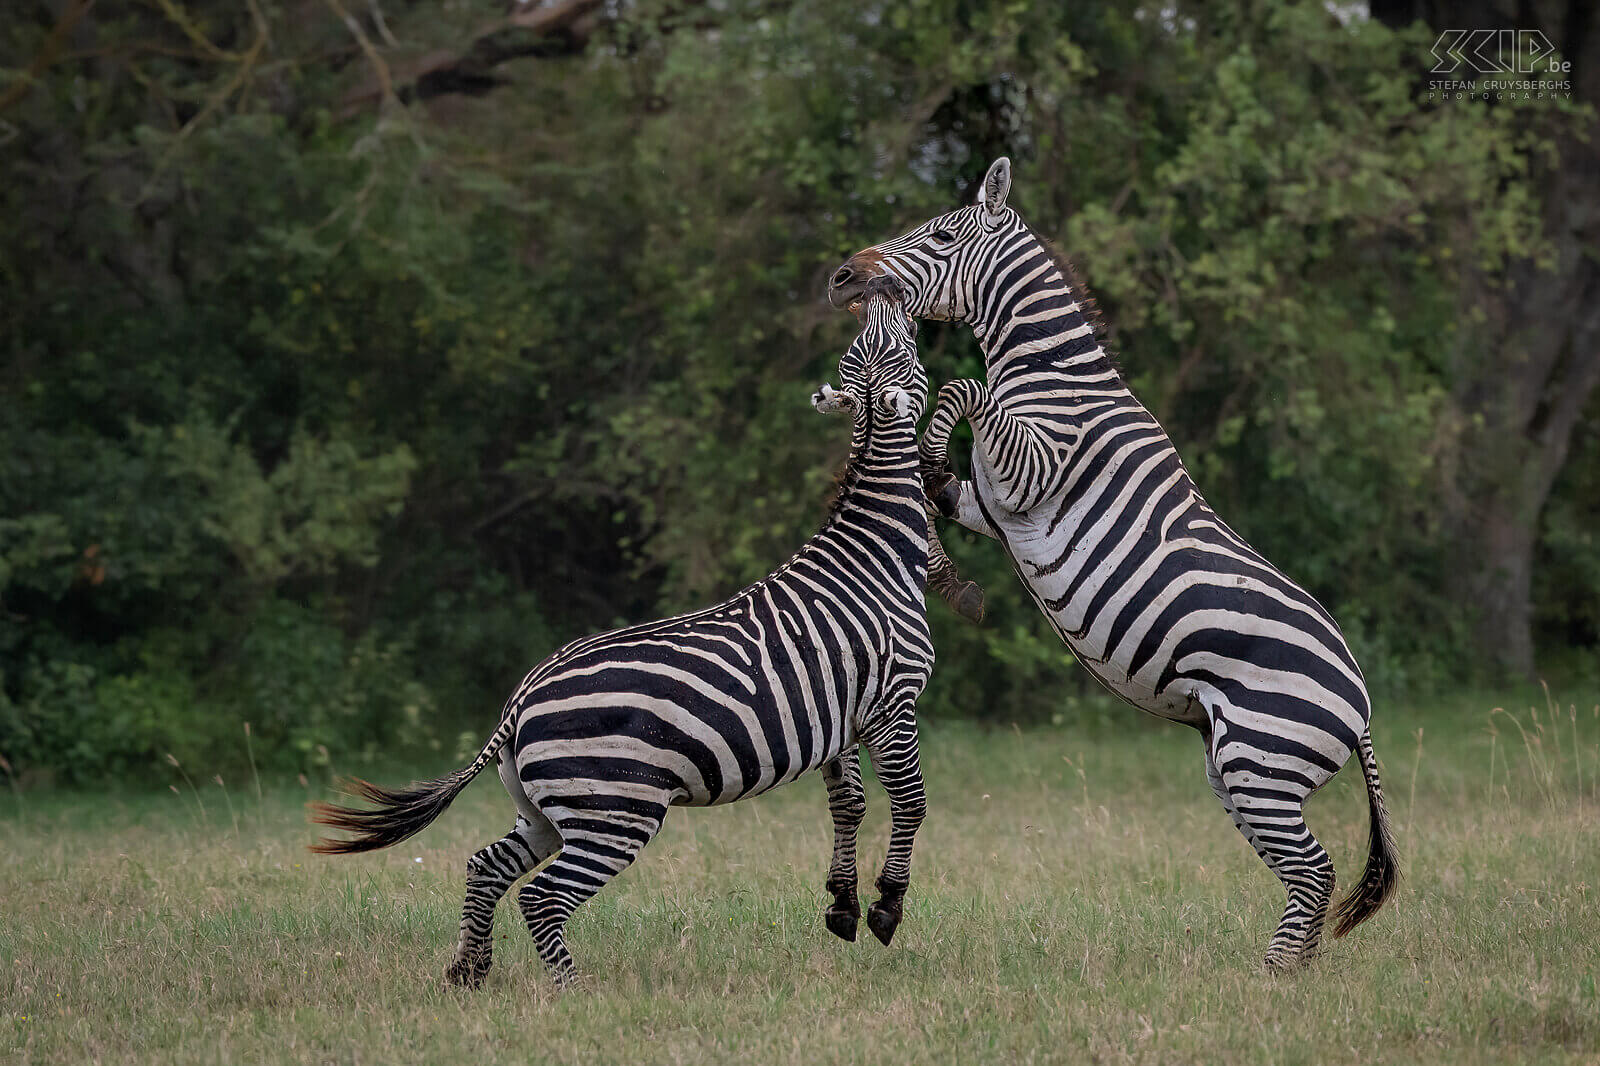 Soysambu - Vechtende zebra's Zebra's zijn sociale dieren die in kleine groepen leven, zogenaamde harems. De harems bestaan uit een mannetje met enkele wijfjes en hun jongen. Af en toe gaat het er echter heftig aan toe als jongen hengsten strijden om hun positie. Wij zagen in Soysambu twee steppezebra's een fel gevecht aangaan. Zebragevechten bestaan voornamelijk uit het bijten in de voor- of achterpoot of nek van de tegenstander. Het meest spectaculaire was als ze op hun achterpoten gingen staan om met te worstelen en te bijten. Af en toe schopten ze met hun achterpoten, wat het meest gevaarlijk is om serieuze verwondingen op te lopen. Stefan Cruysberghs